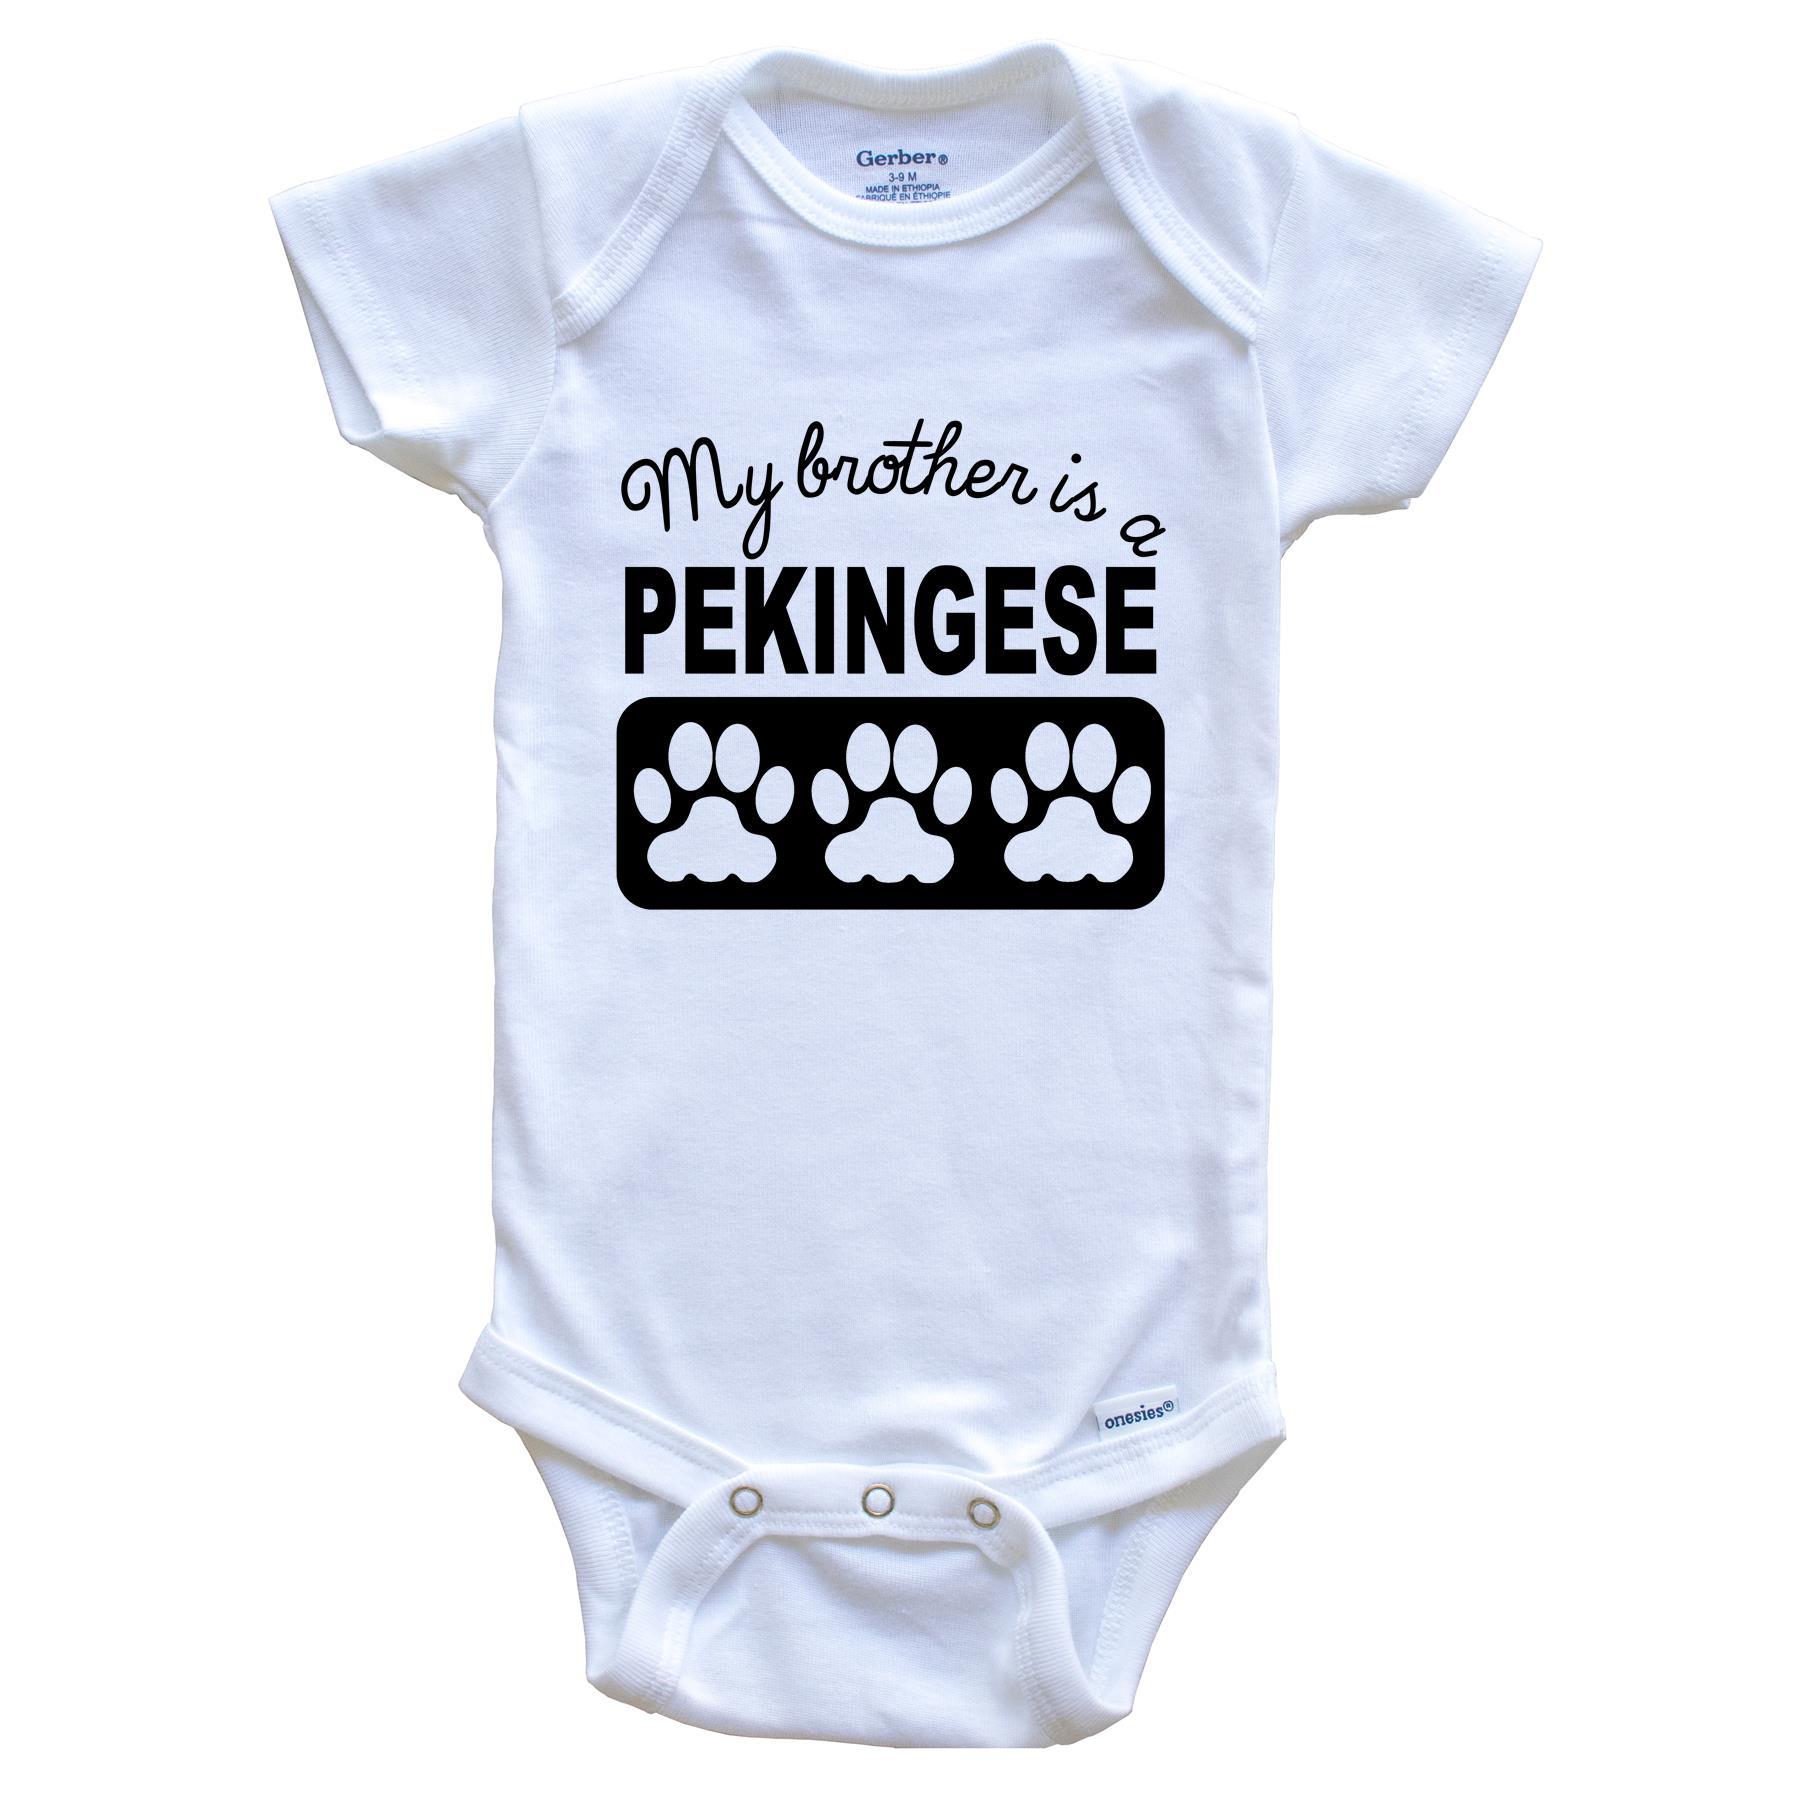 My Brother Is A Pekingese Baby Onesie